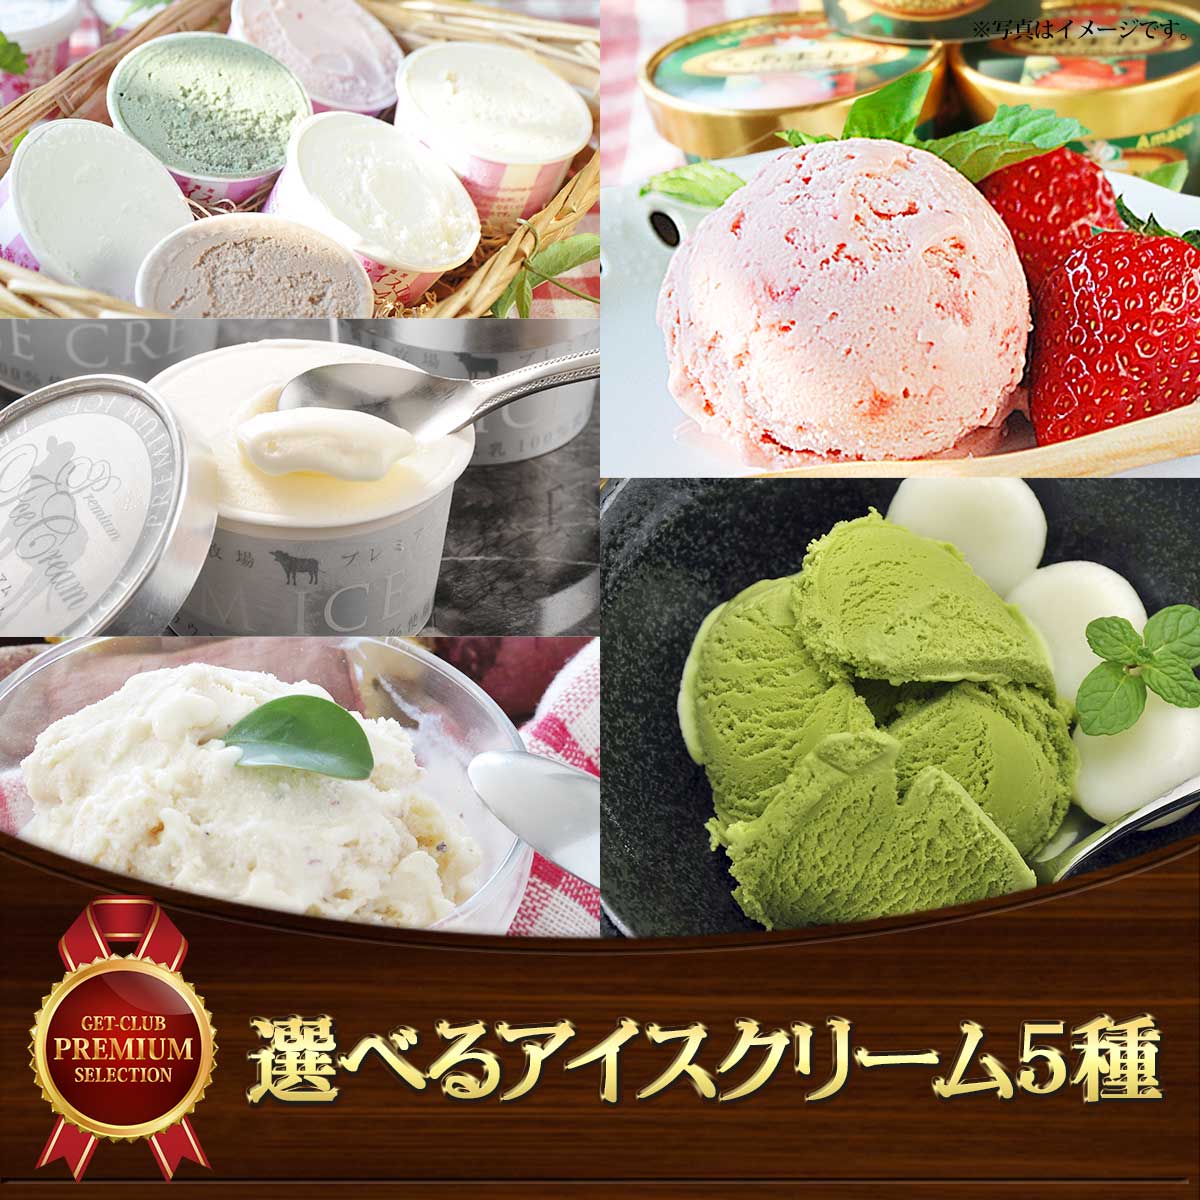 選べるアイスクリーム5種［あまおう 抹茶 焼き芋 葉山牧場 橋本牧場］